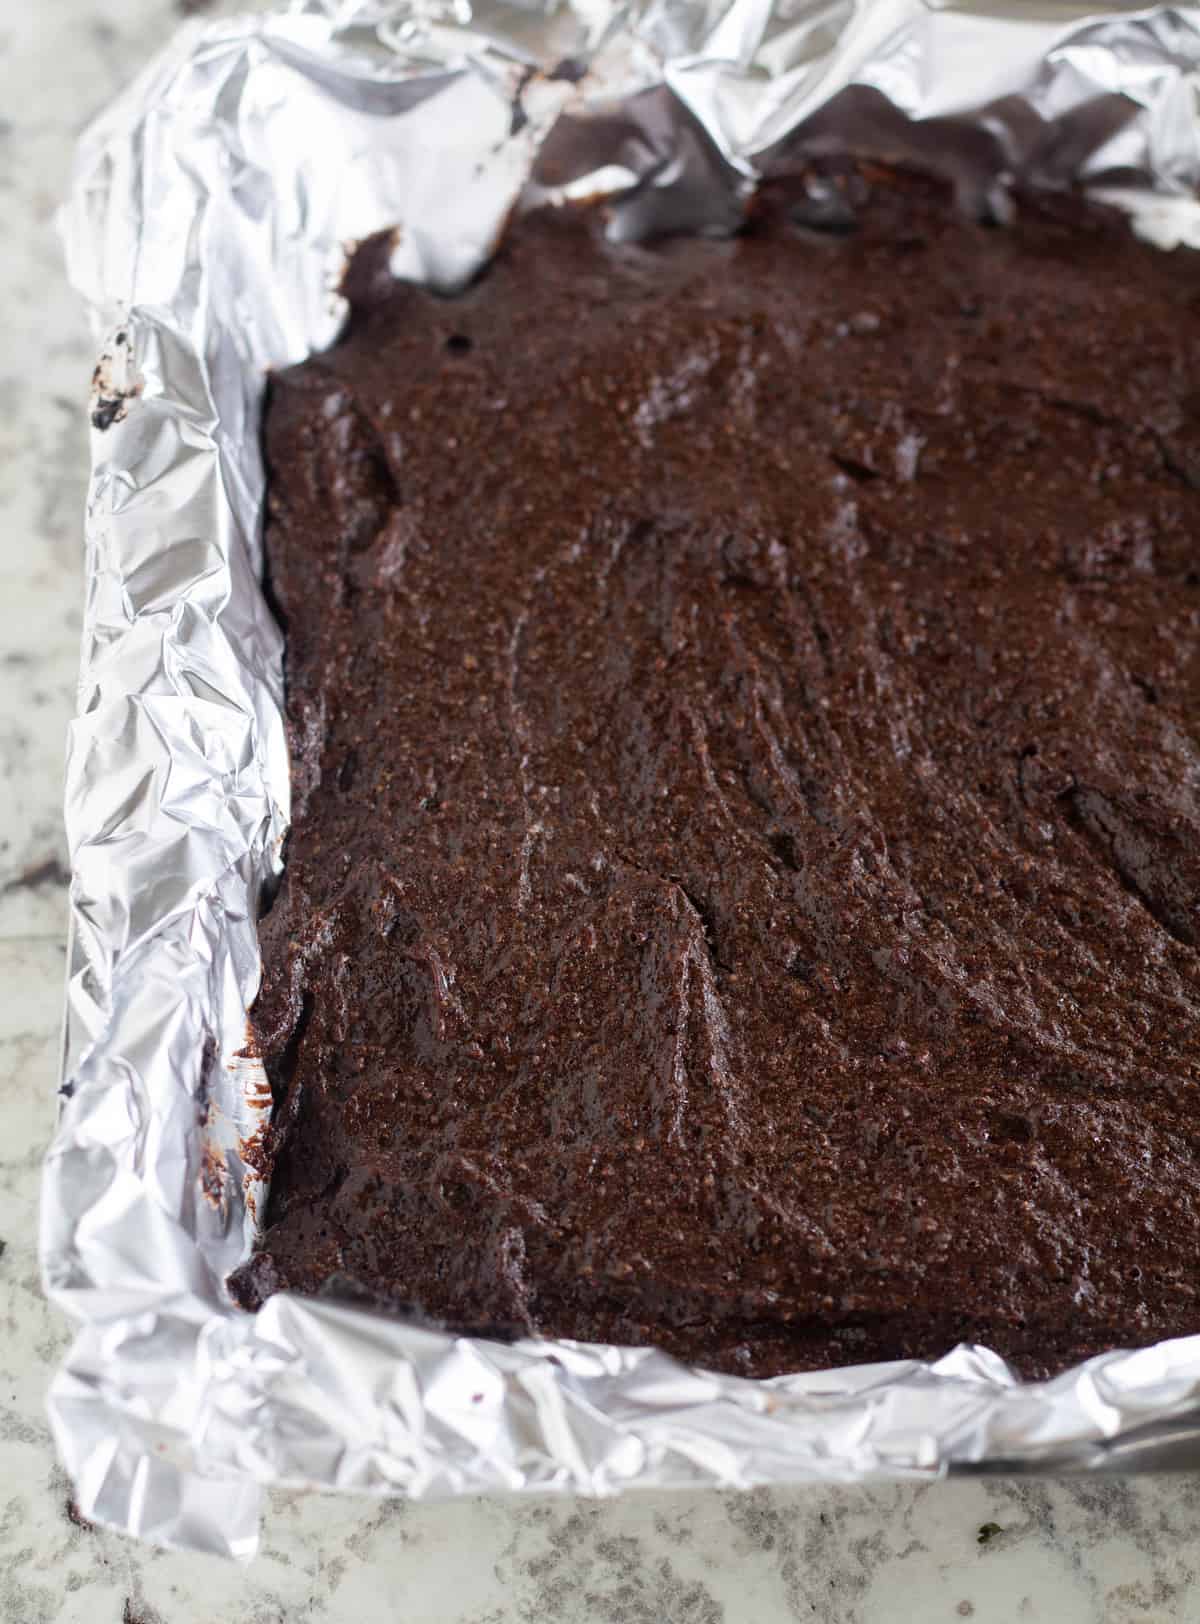 Uncut, baked brownies in pan